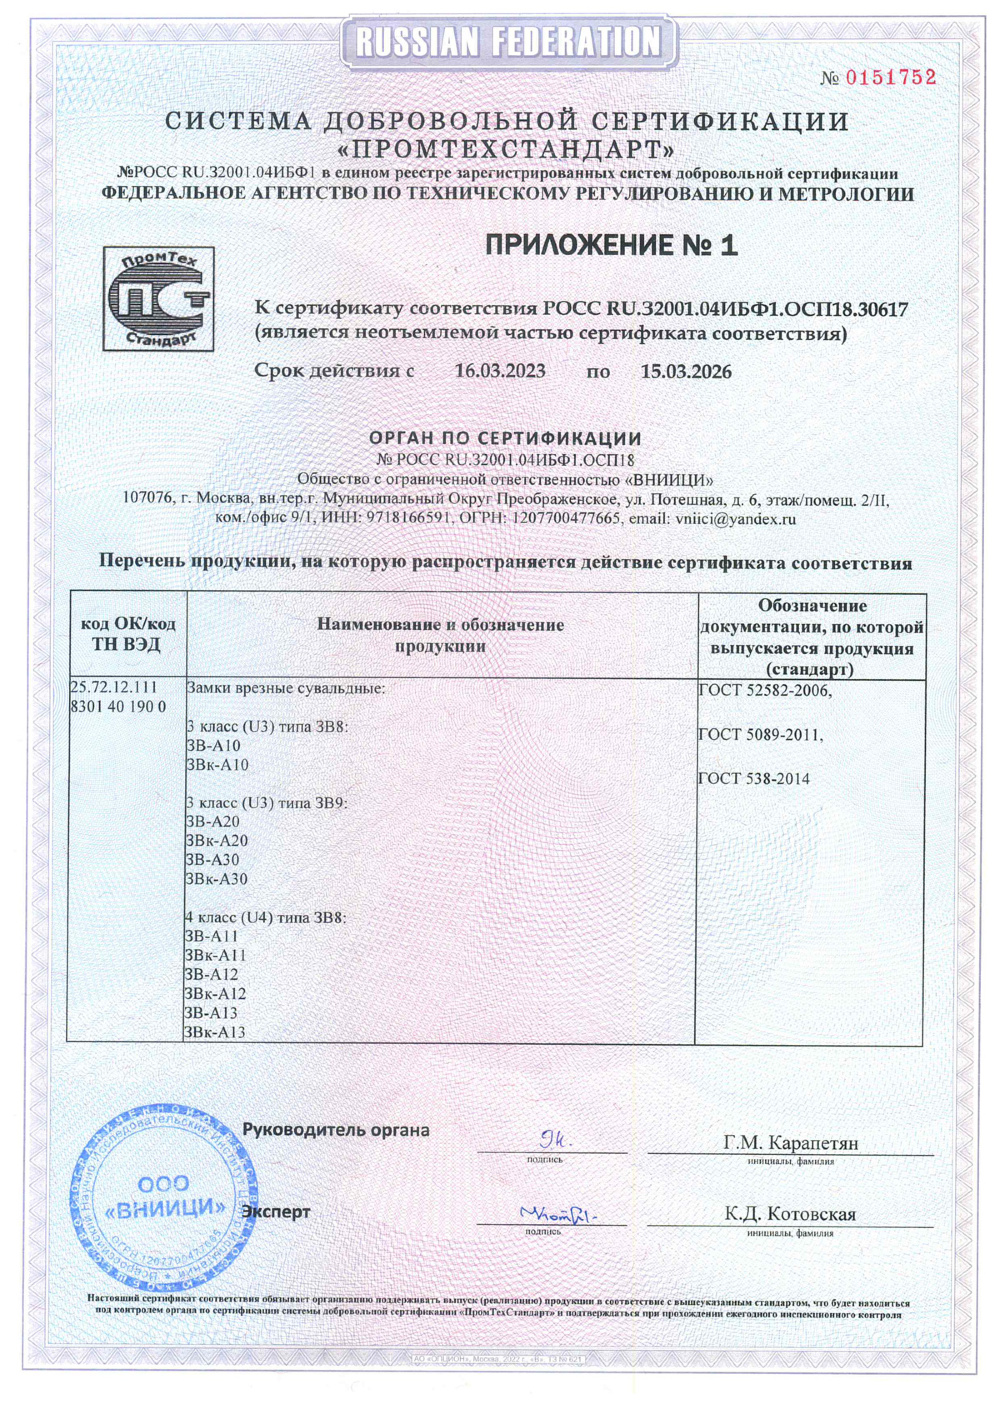 сертификат соответствия для замка А20 стр2